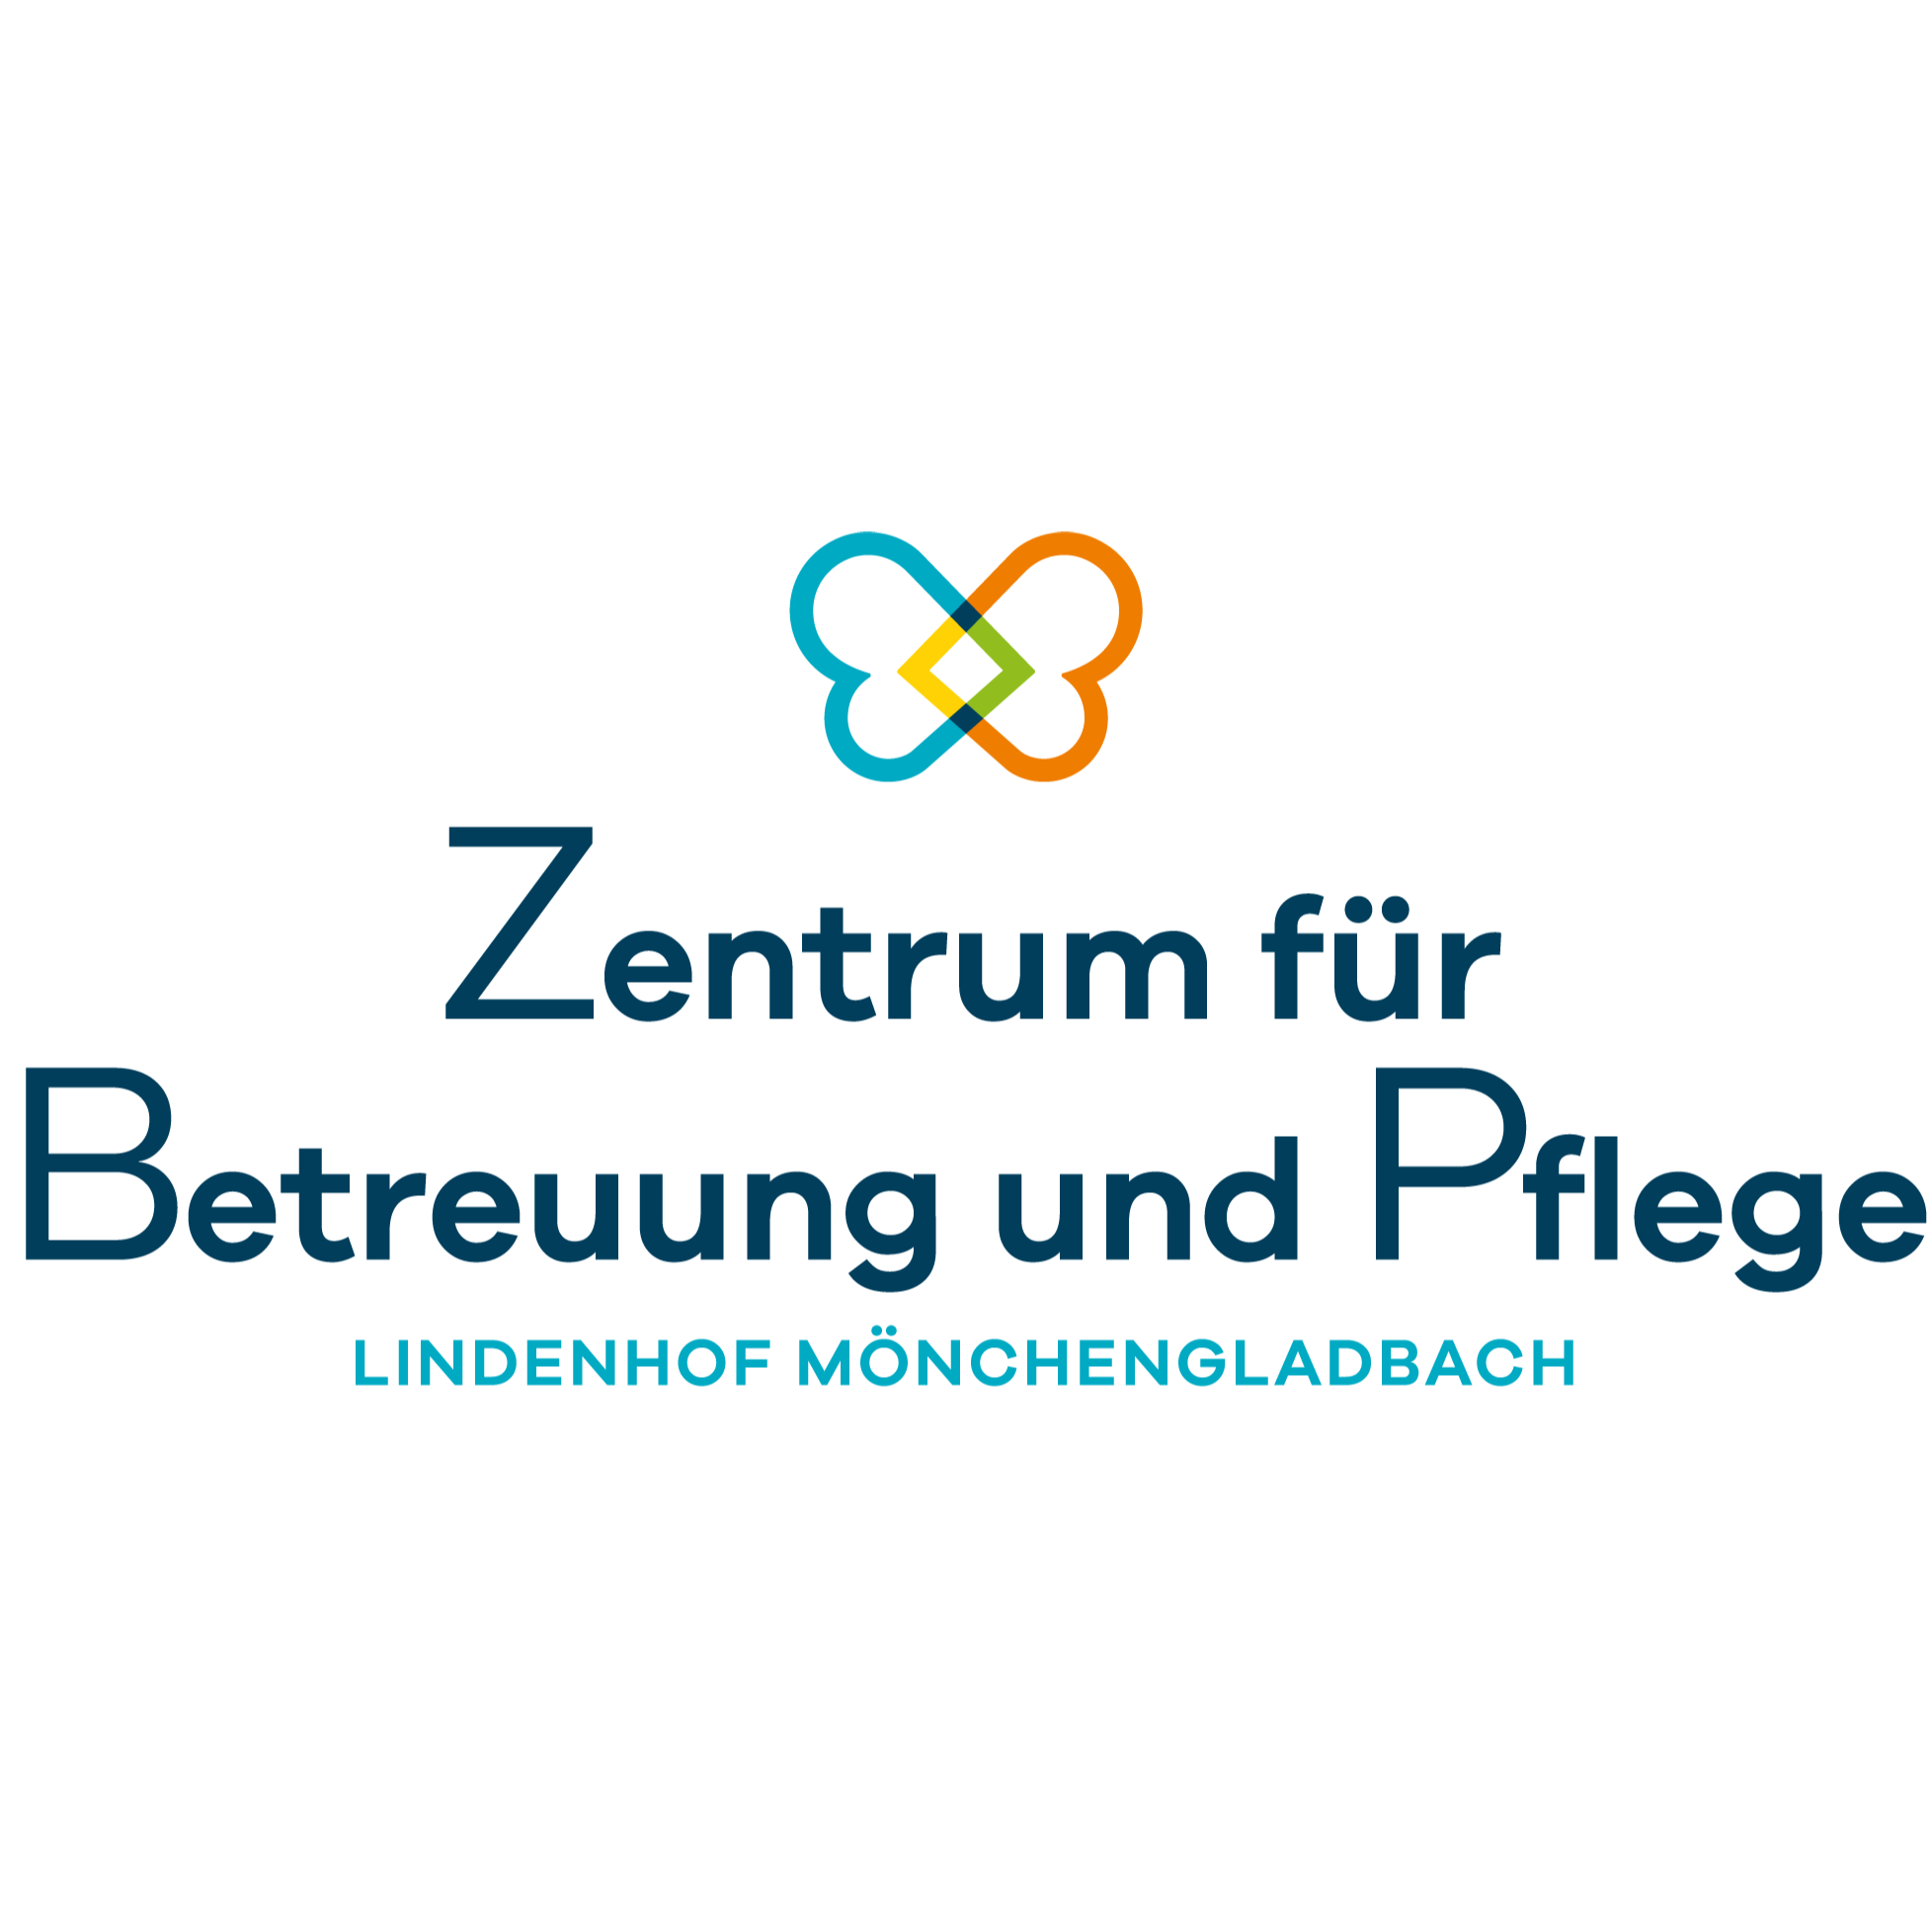 Zentrum für Betreuung und Pflege Lindenhof Mönchengladbach in Mönchengladbach - Logo